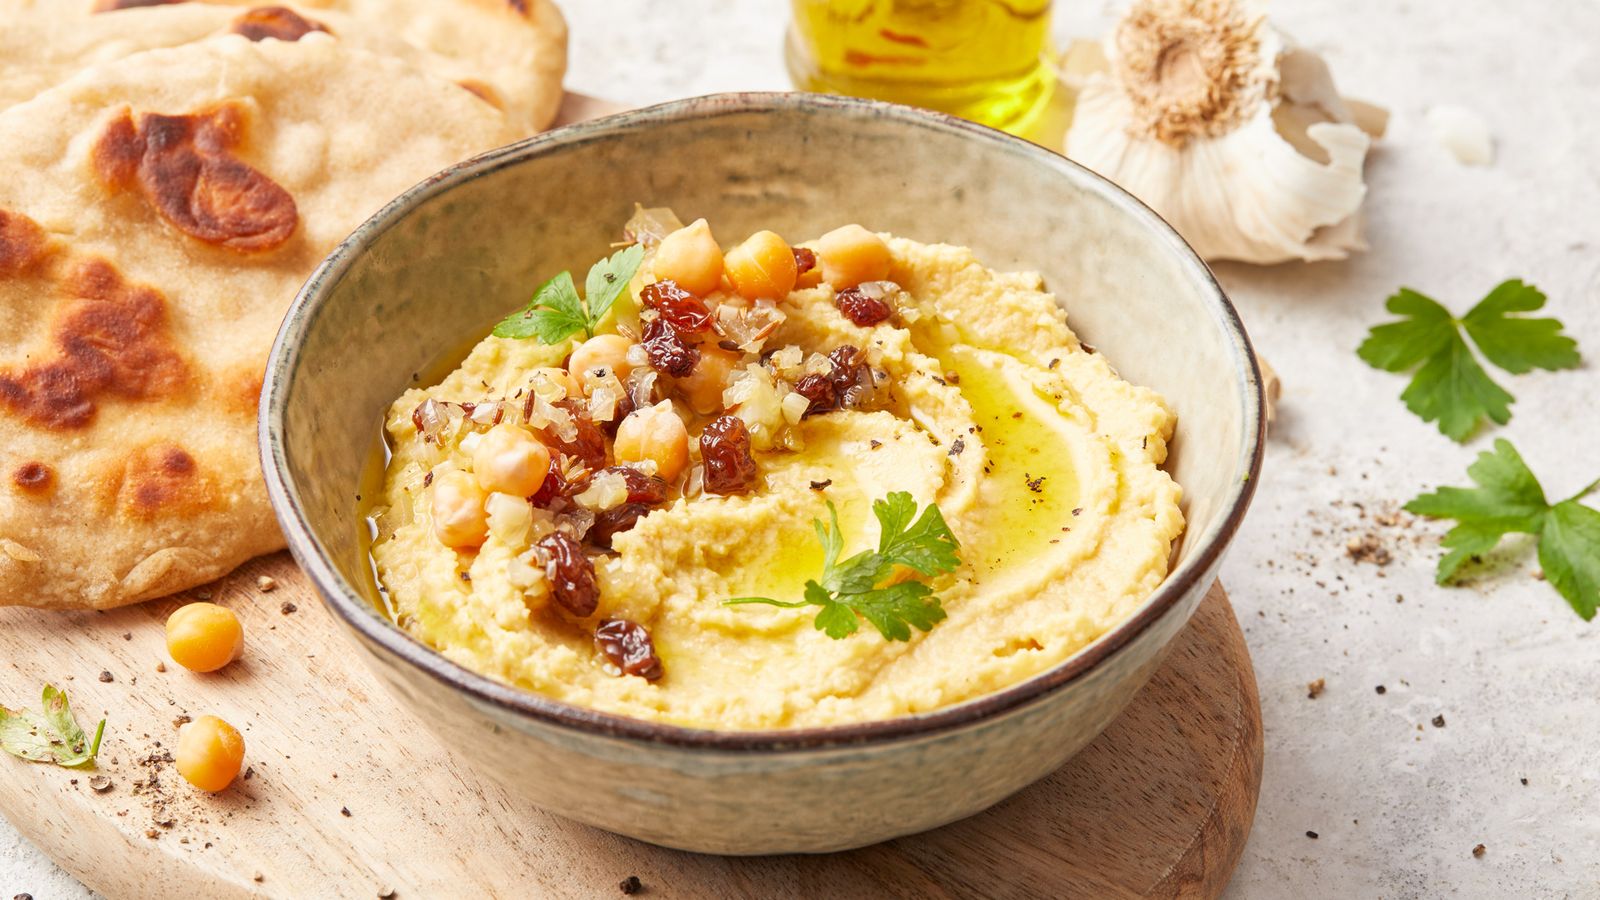 Hummus mit Safran und Rosinen